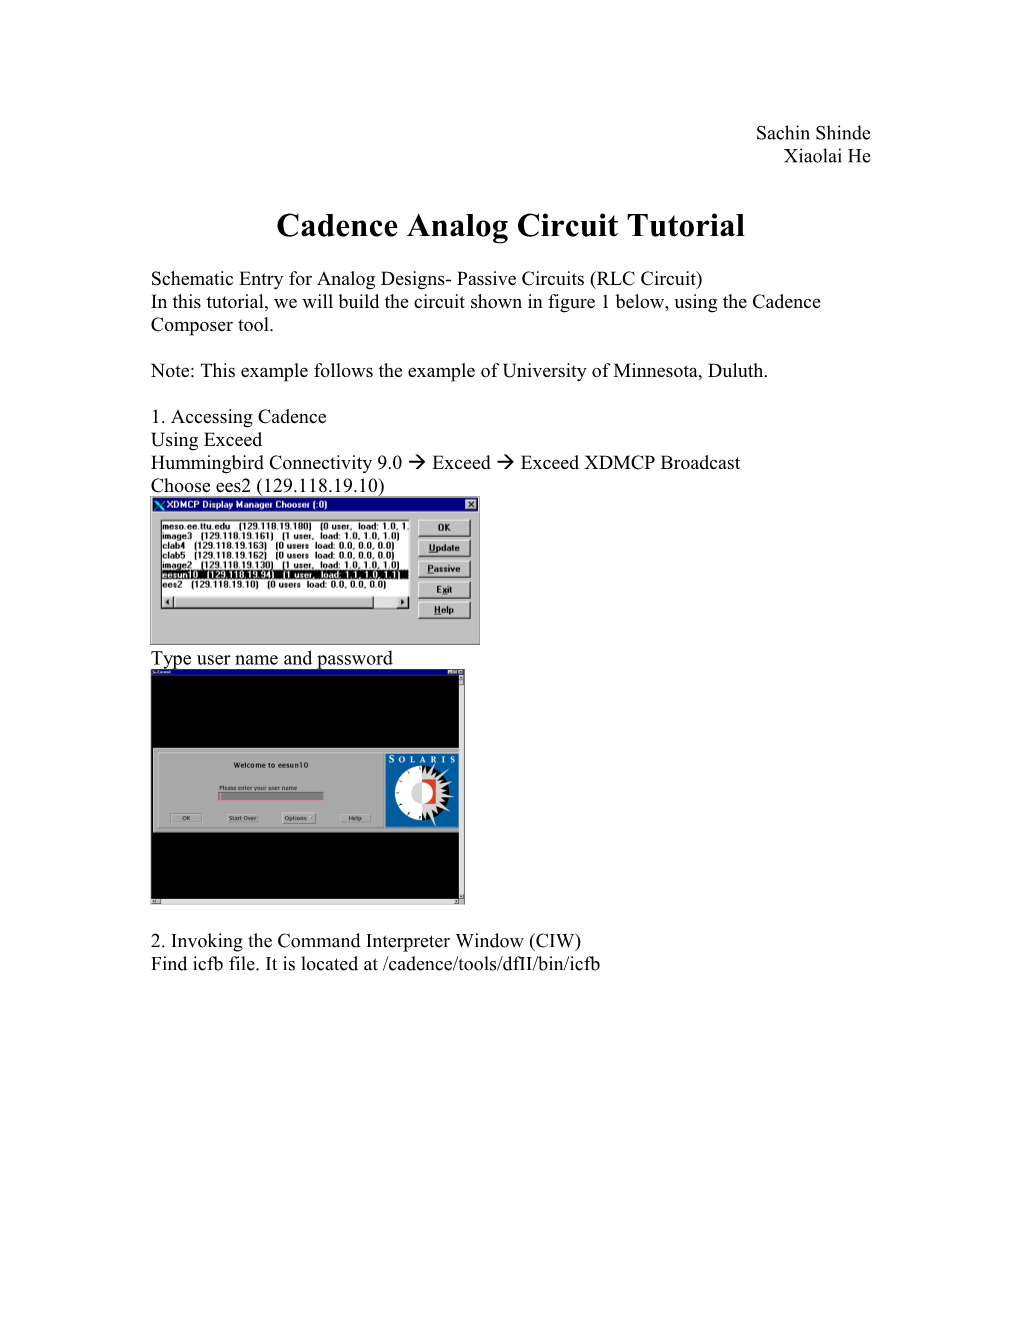 Cadence Analog Circuit Tutorial